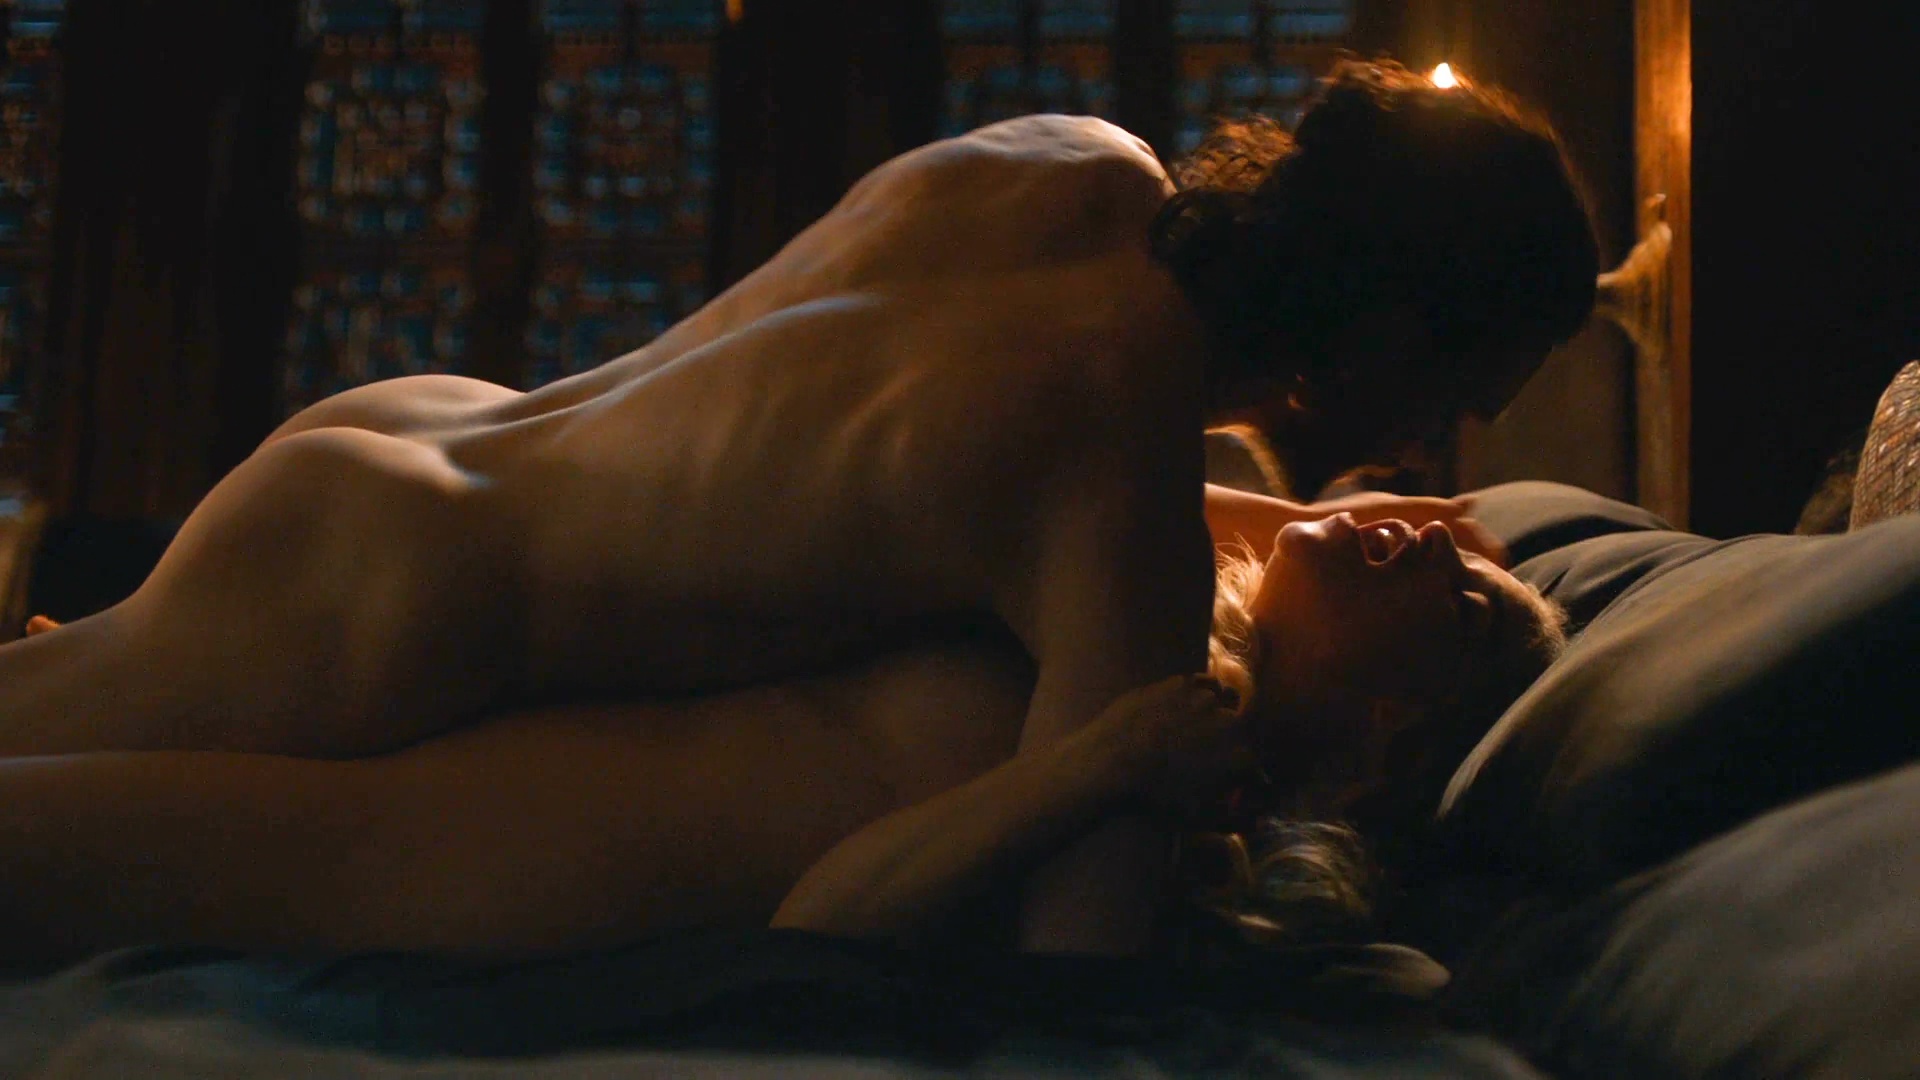 Emilia Clarke Desnuda En Game Of Thrones Free Hot Nude Porn Pic Gallery